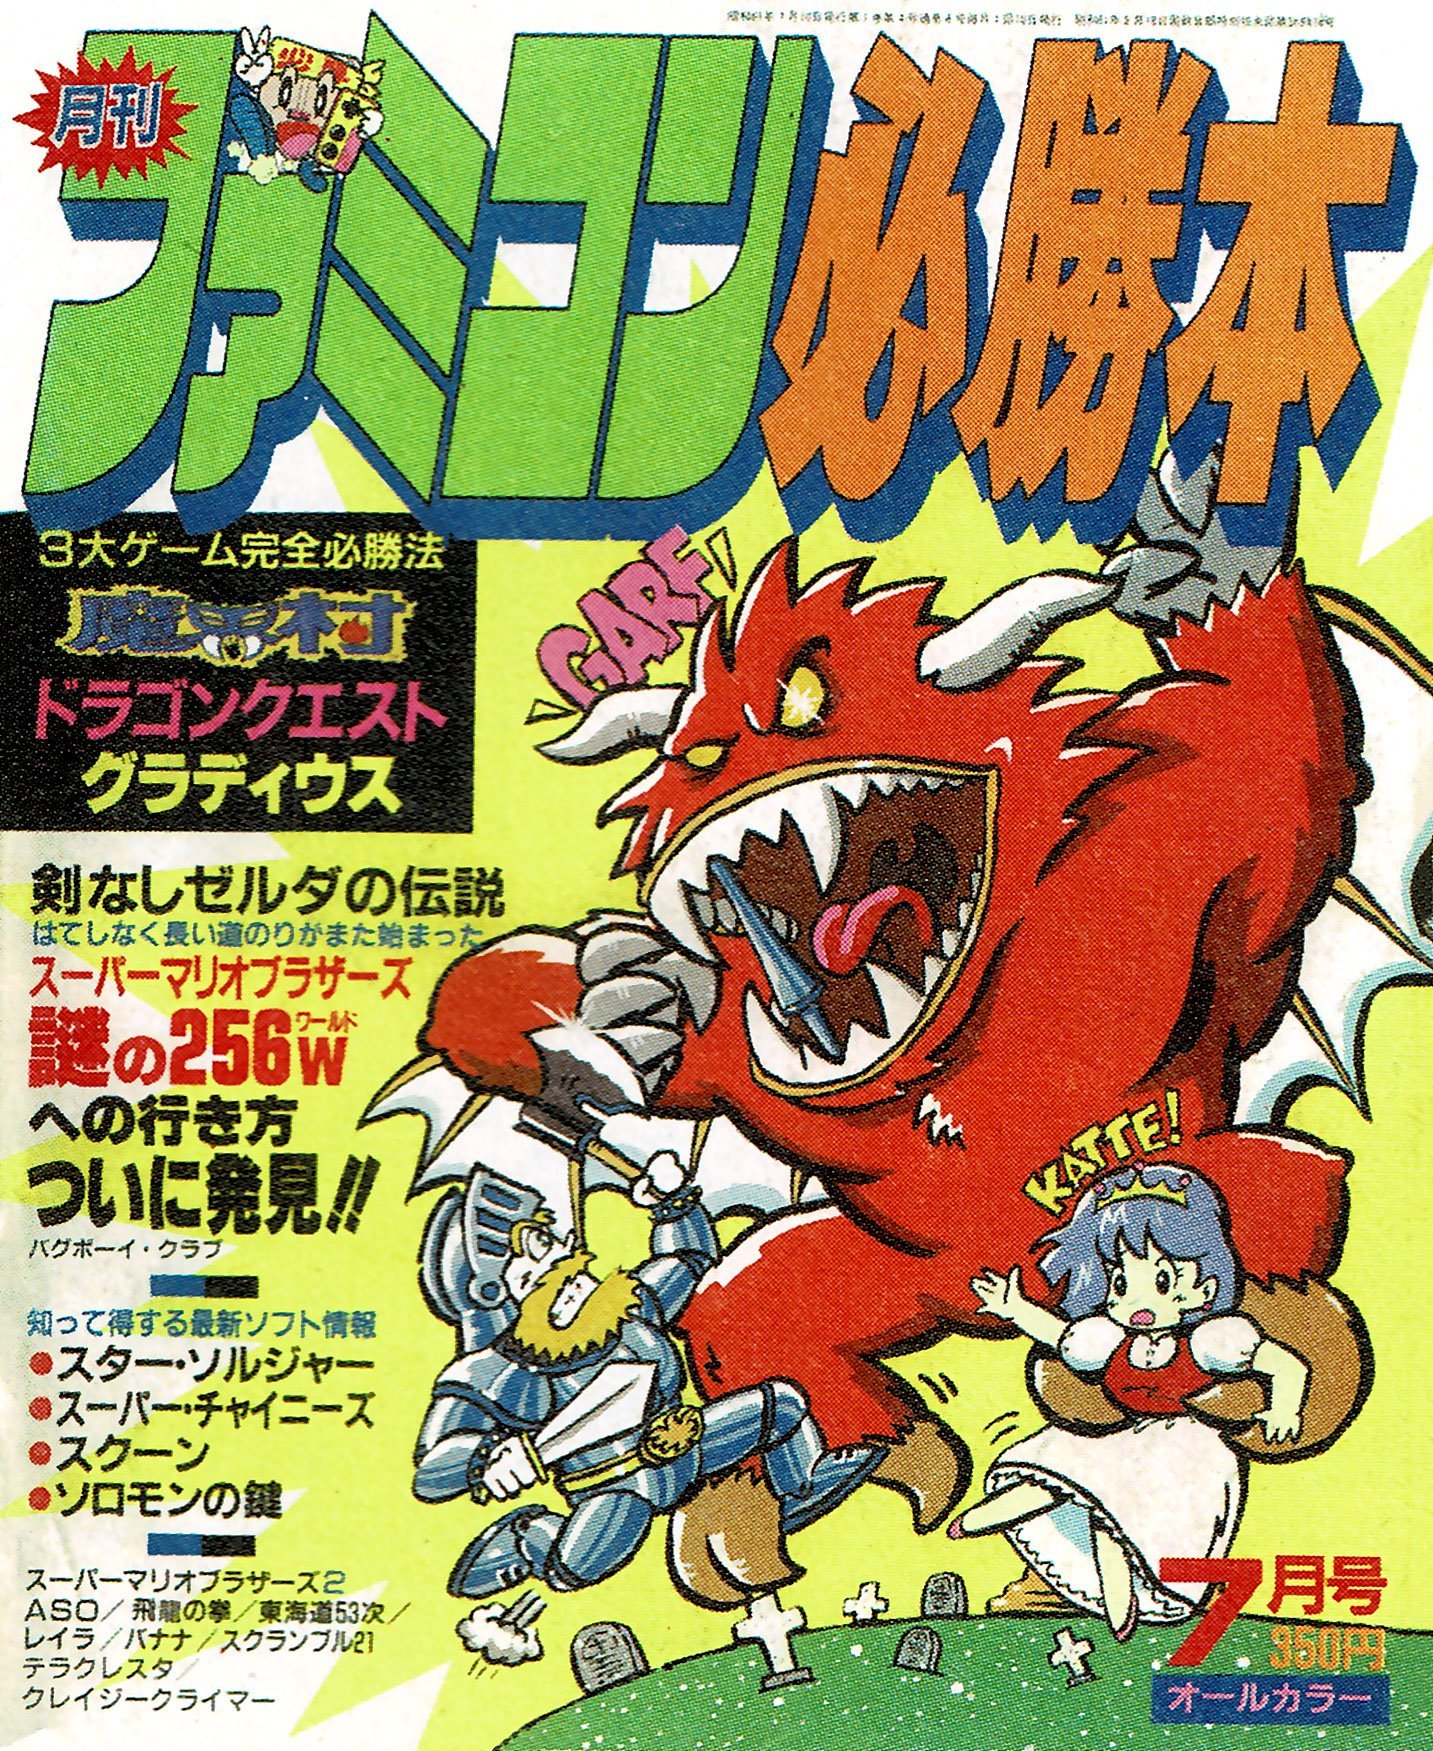 Famicom Hisshoubon Issue 004 (July 1986) - Famicom Hisshoubon ...